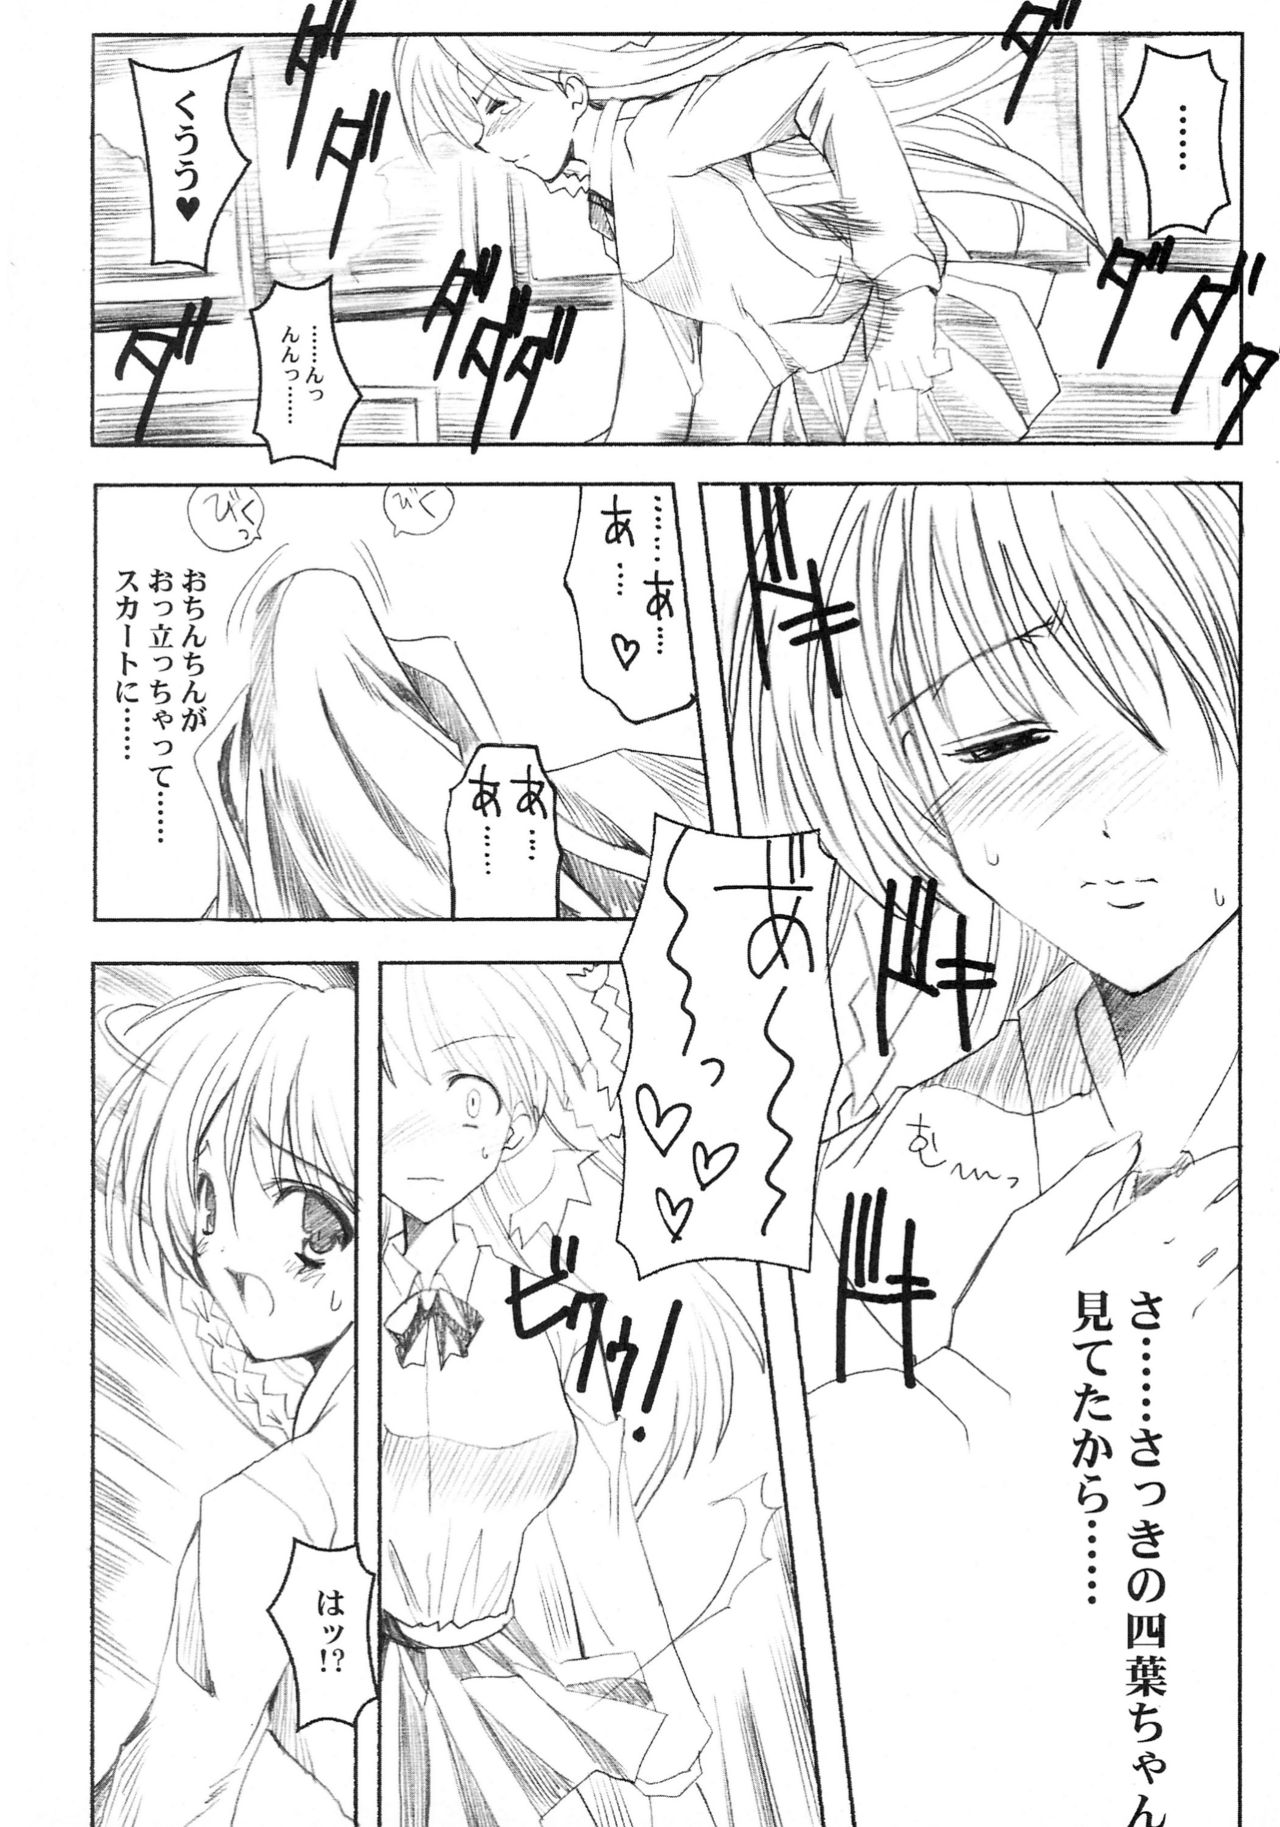 (C60) [HarthNir (Misakura Nankotsu)] Binzume Sisters 1-B (Guilty Gear, Sister Princess) (C60) [ハースニール (みさくらなんこつ)] ビンズメシスターズ 瓶詰妹達1-B (ギルティギア、シスタープリンセス)